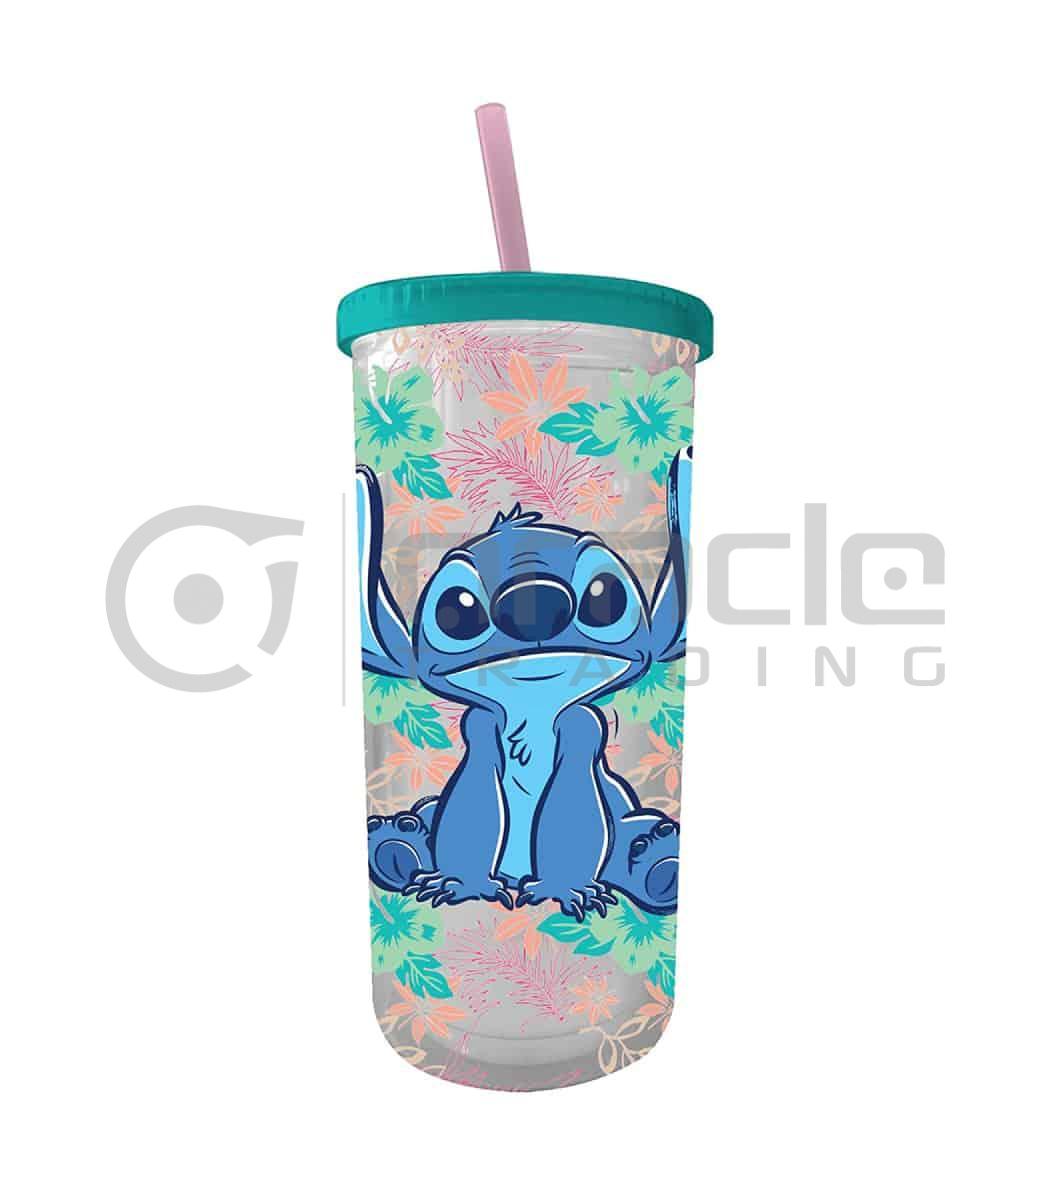 Lilo & Stitch Cold Cup - Tropical